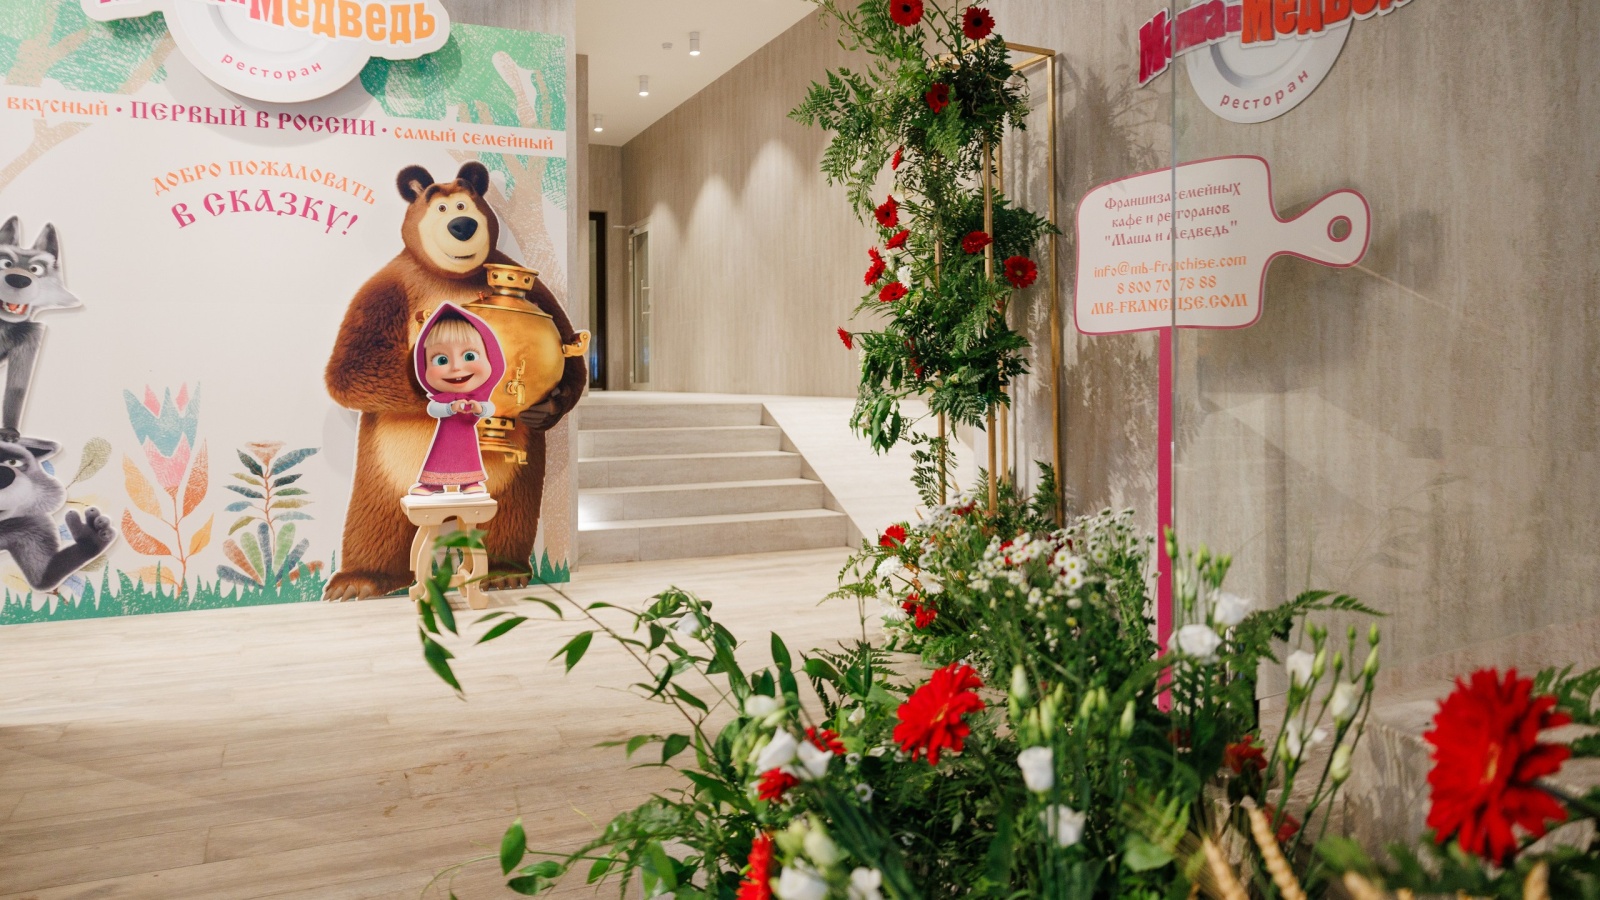 Baden Family открыла первый в России ресторан «Маша и Медведь»